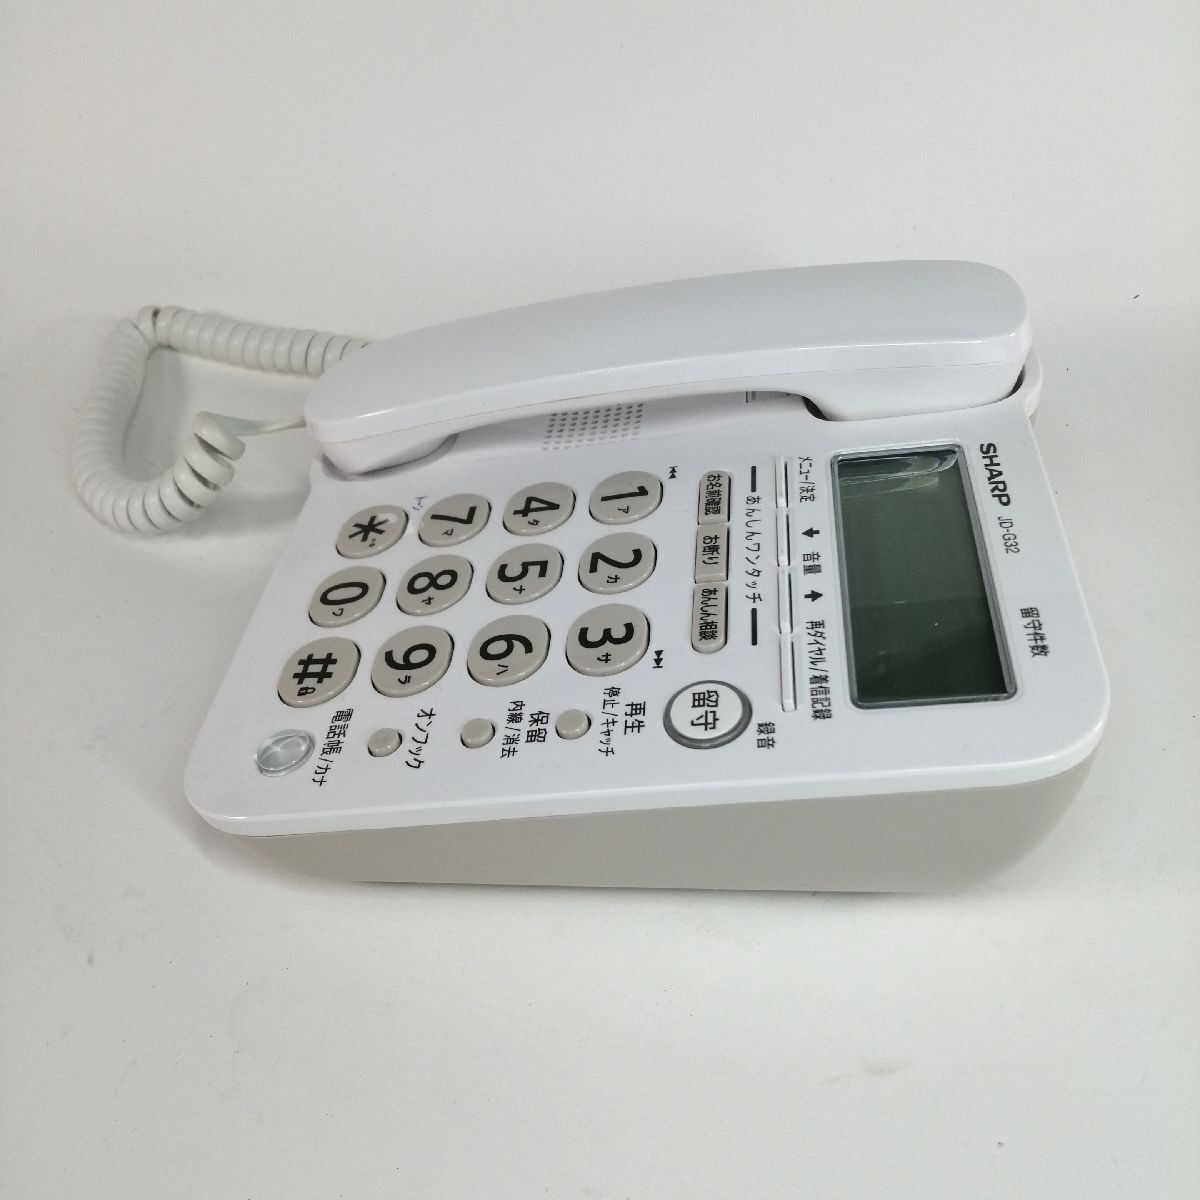 シャープ SHARP デジタルコードレス電話機 JD-G32CL jd-g32cw 親機1 子機1台 ホワイトの画像4